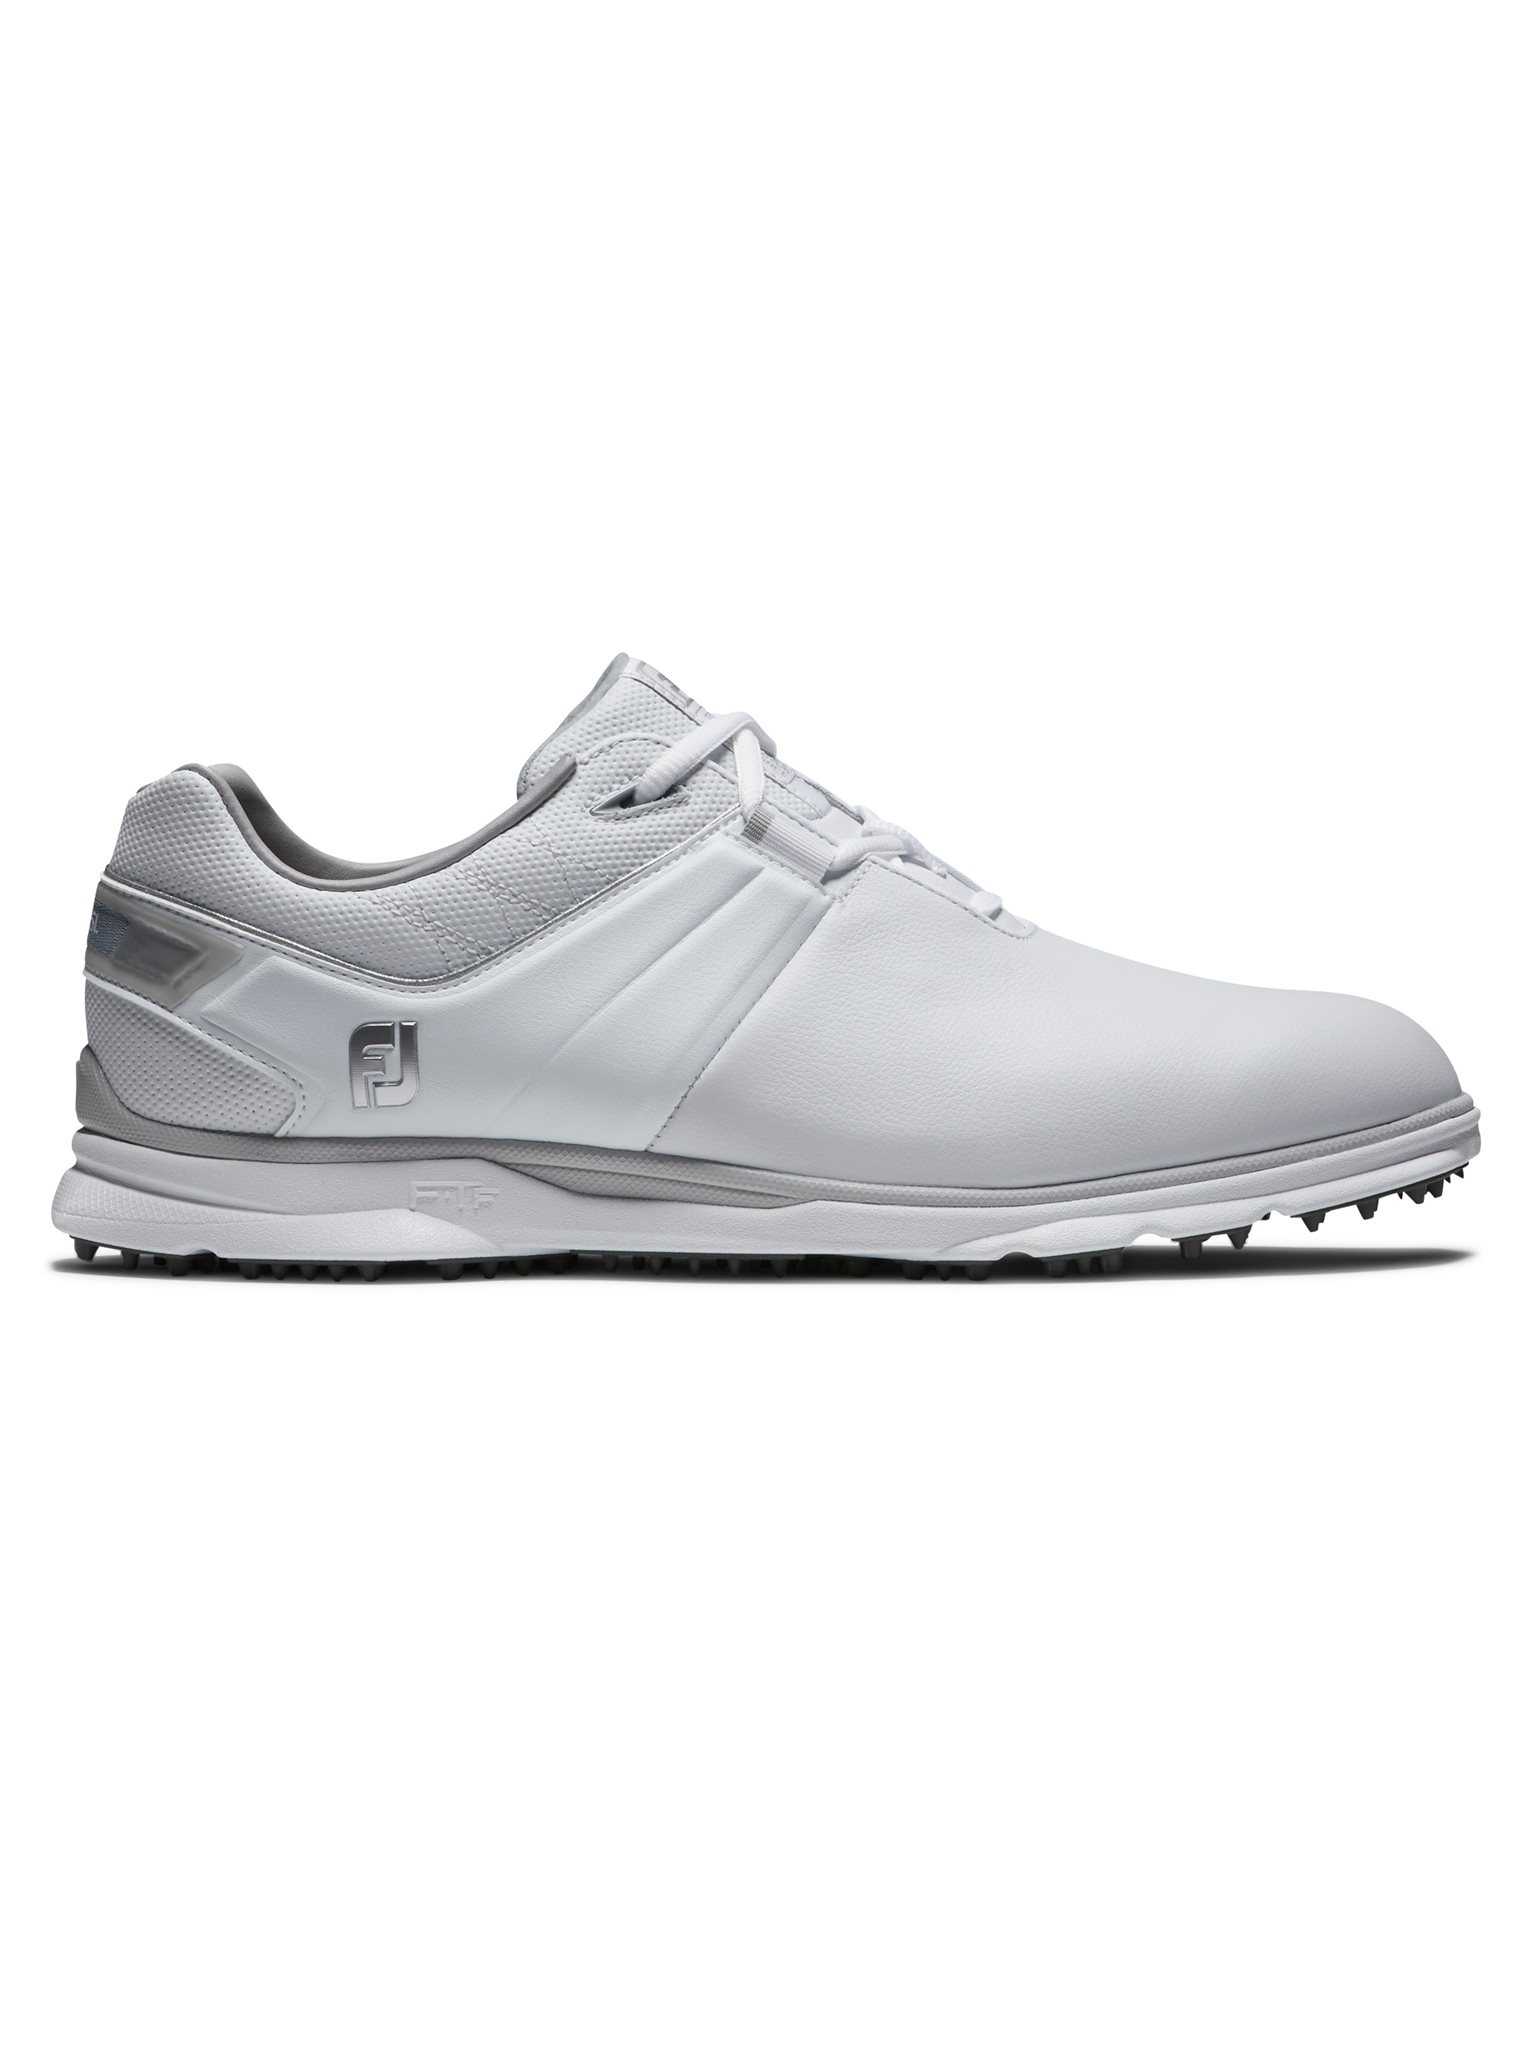 heren golfschoenen Pro/SL wit-grijs - Golftassen, Golfclubs, Golfschoenen | Ook online kopen bij Golfers Point | Golfers Point